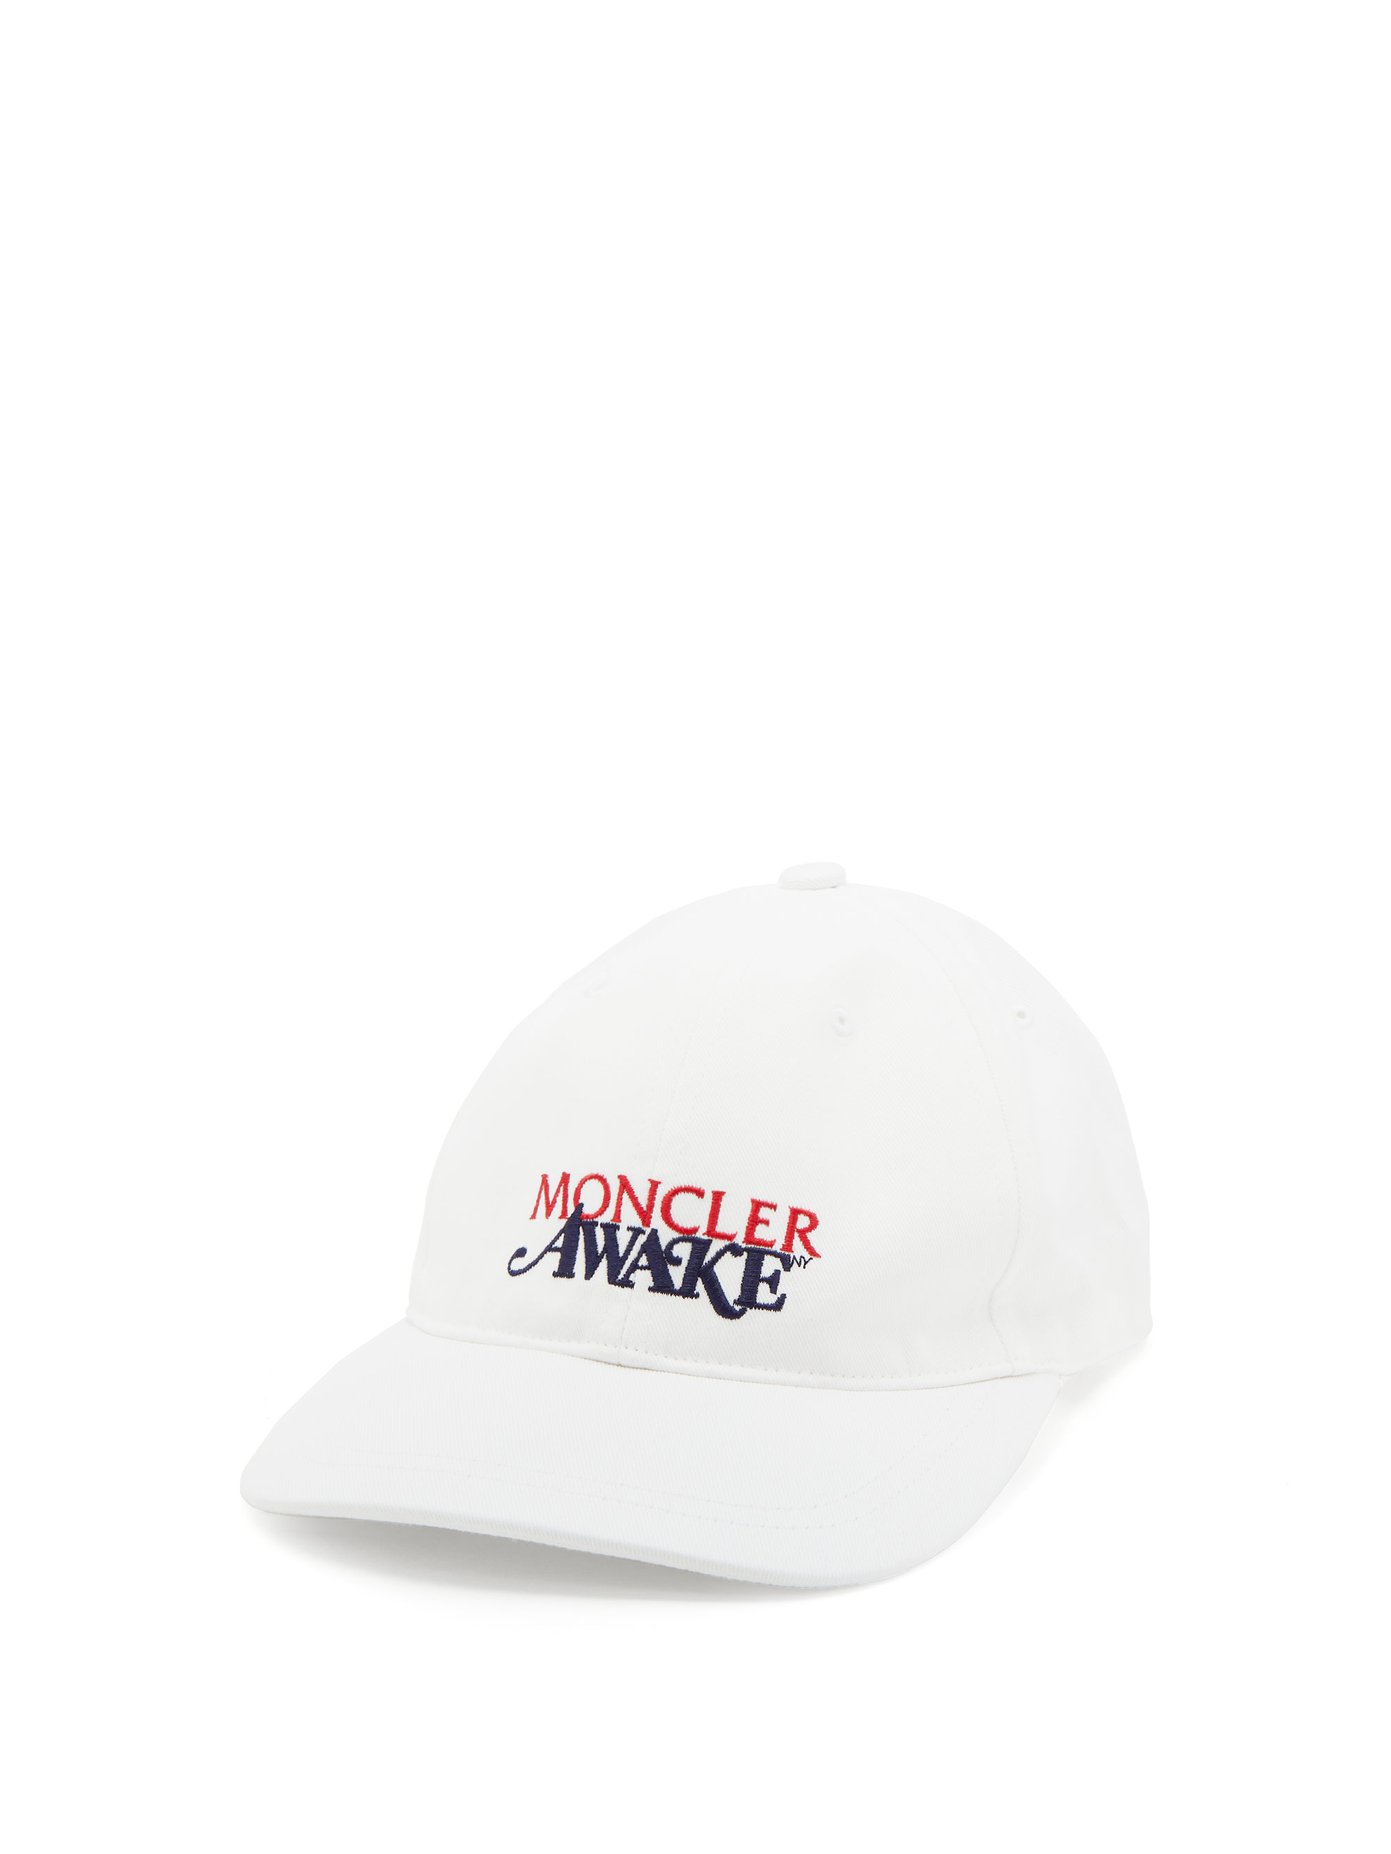 moncler cap white